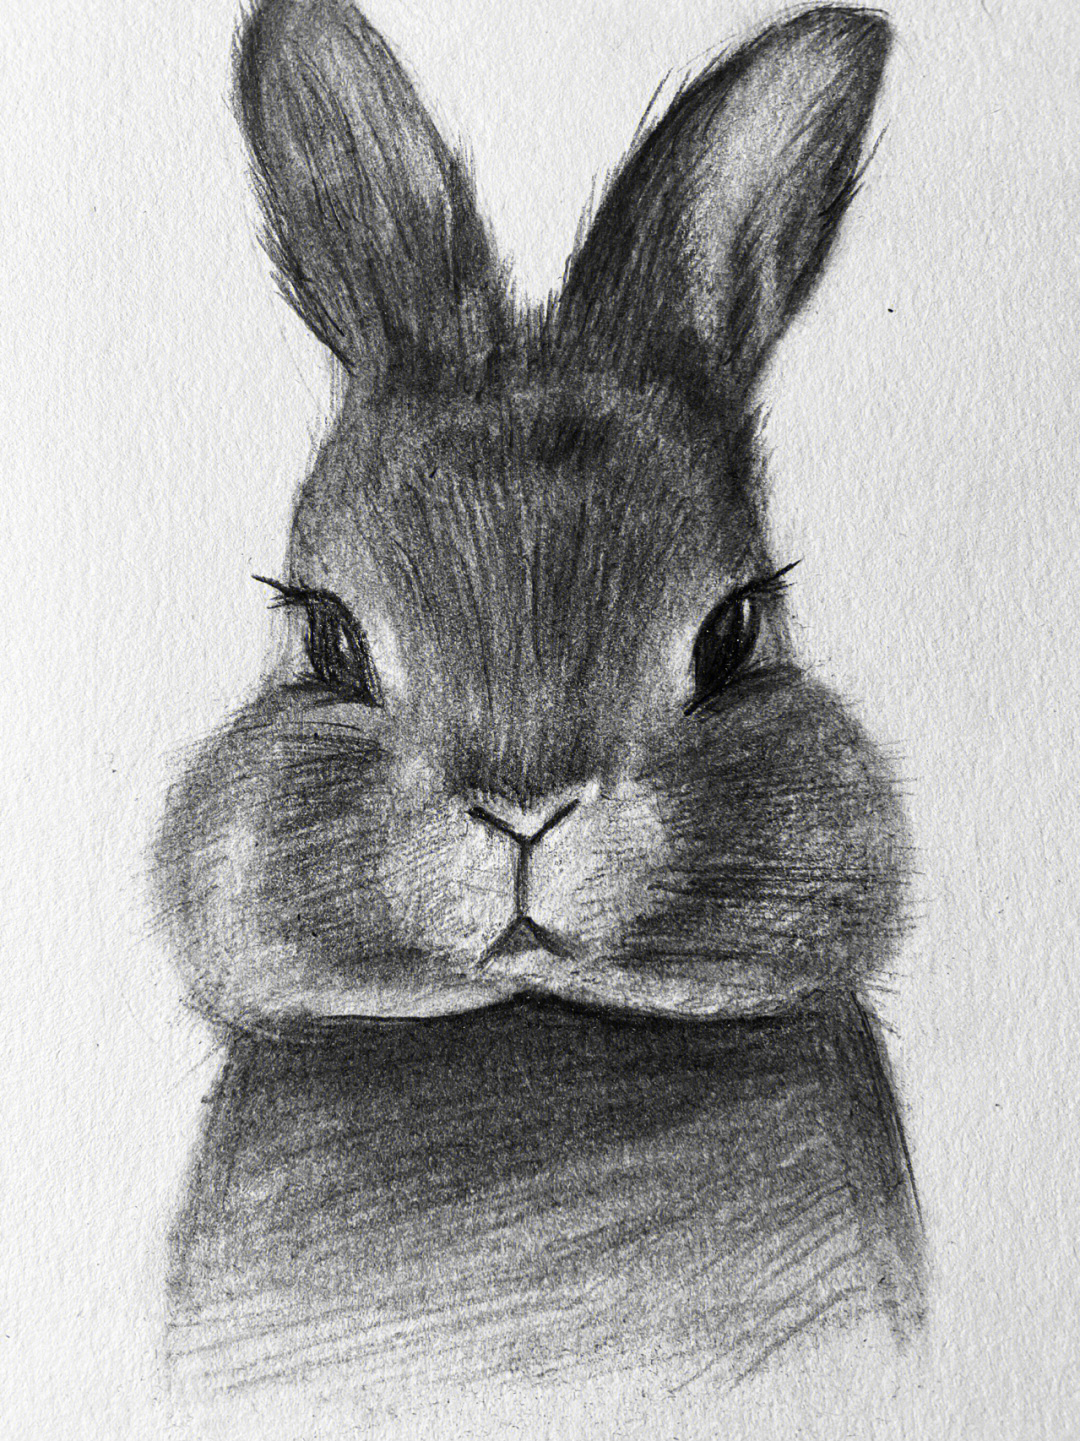 兔子怎么画 手绘 很难图片